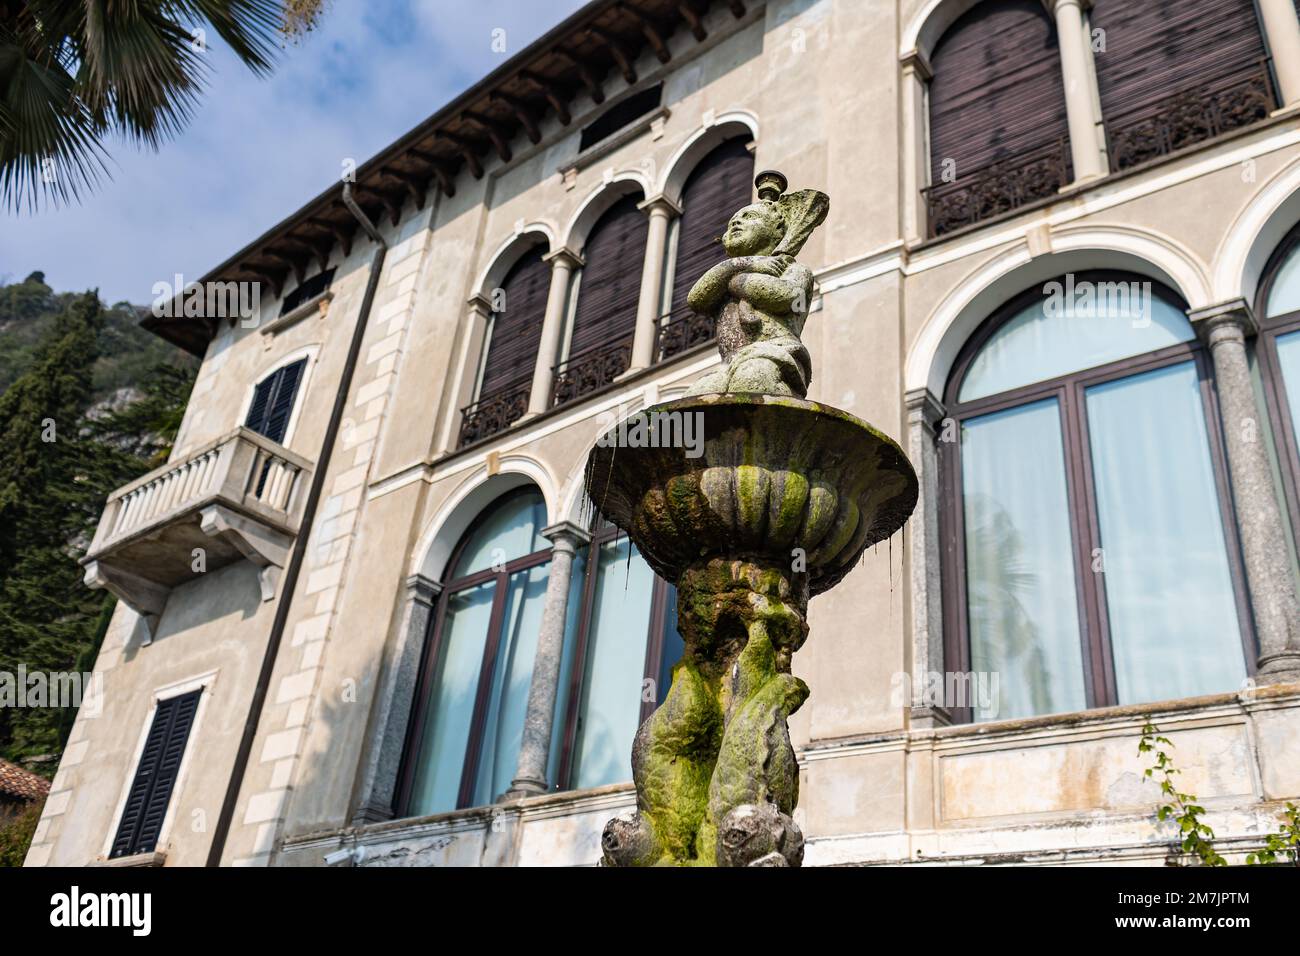 Gros plan d'une fontaine de sculpture humaine dans le jardin de Villa Monastero, Lac de Côme, Italie Banque D'Images